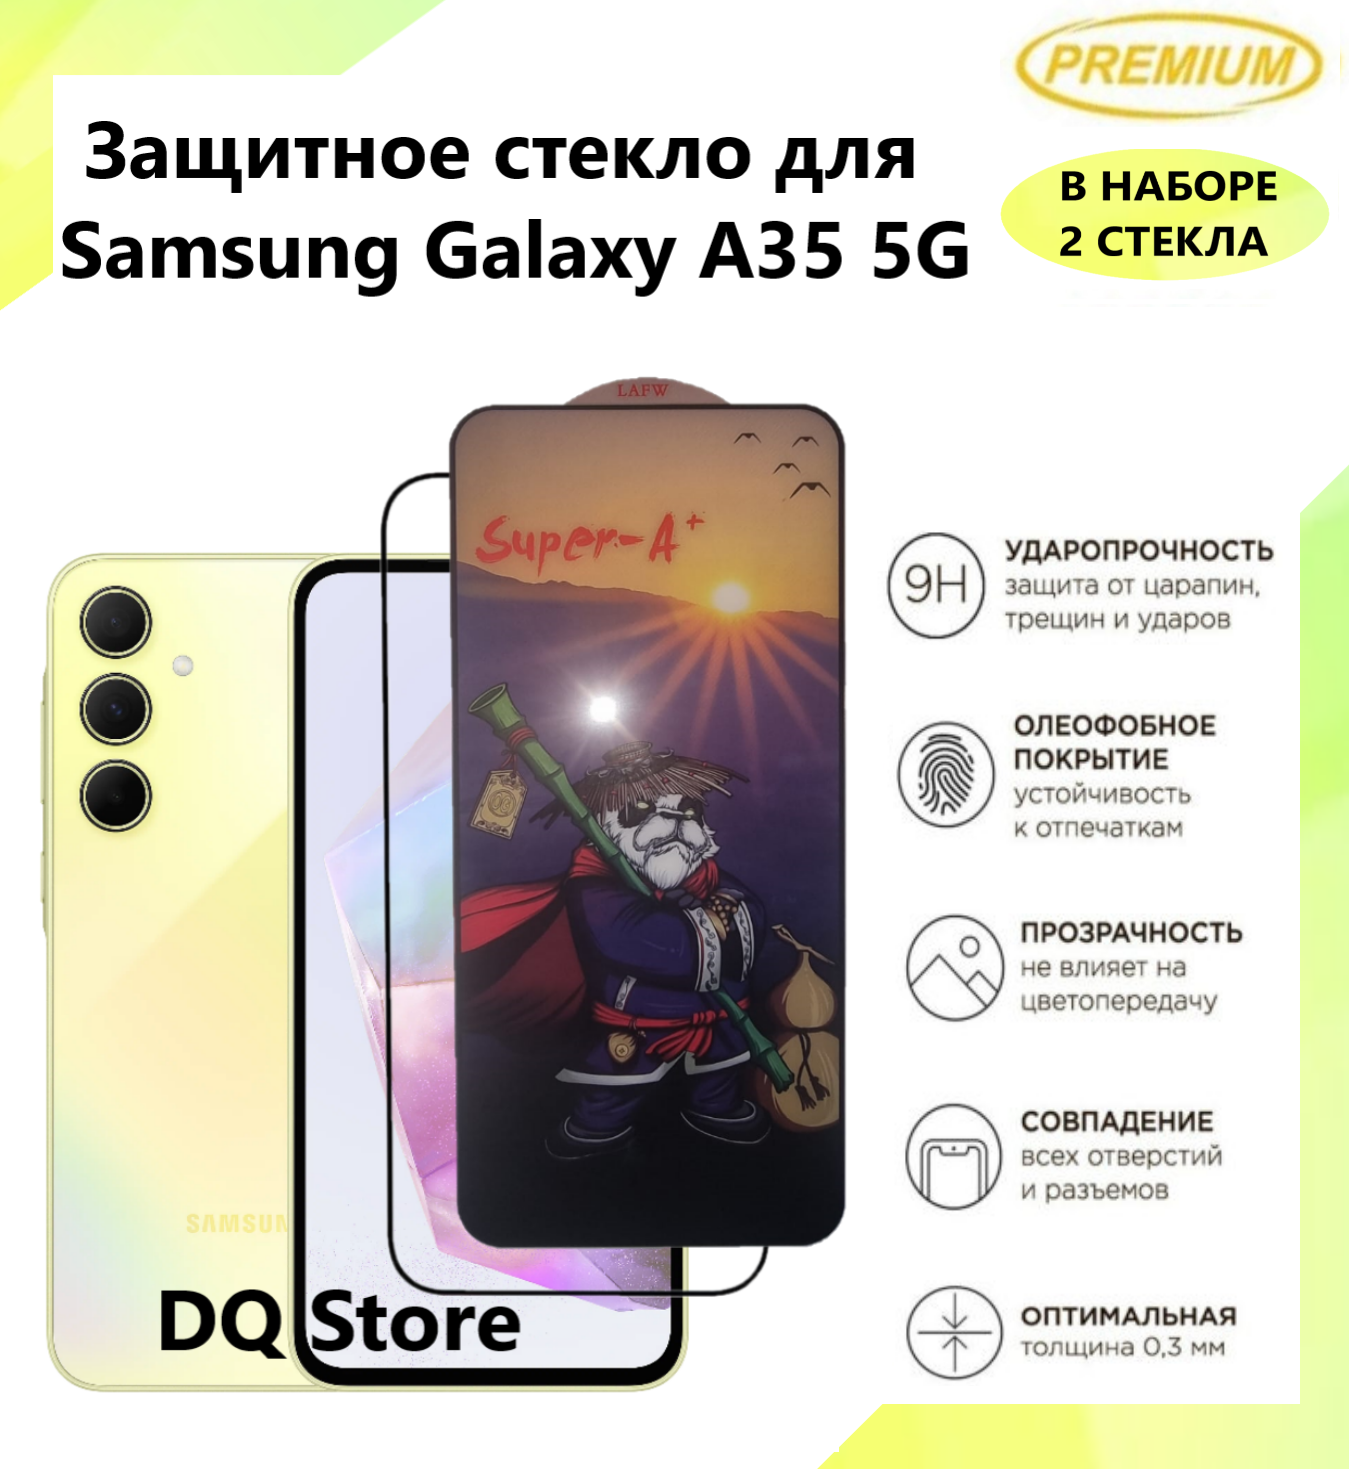 2 Защитных стекла для Samsung Galaxy A35 5G / Самсунг Галакси А35 . Полноэкранные защитные стекла с олеофобным покрытием Premium